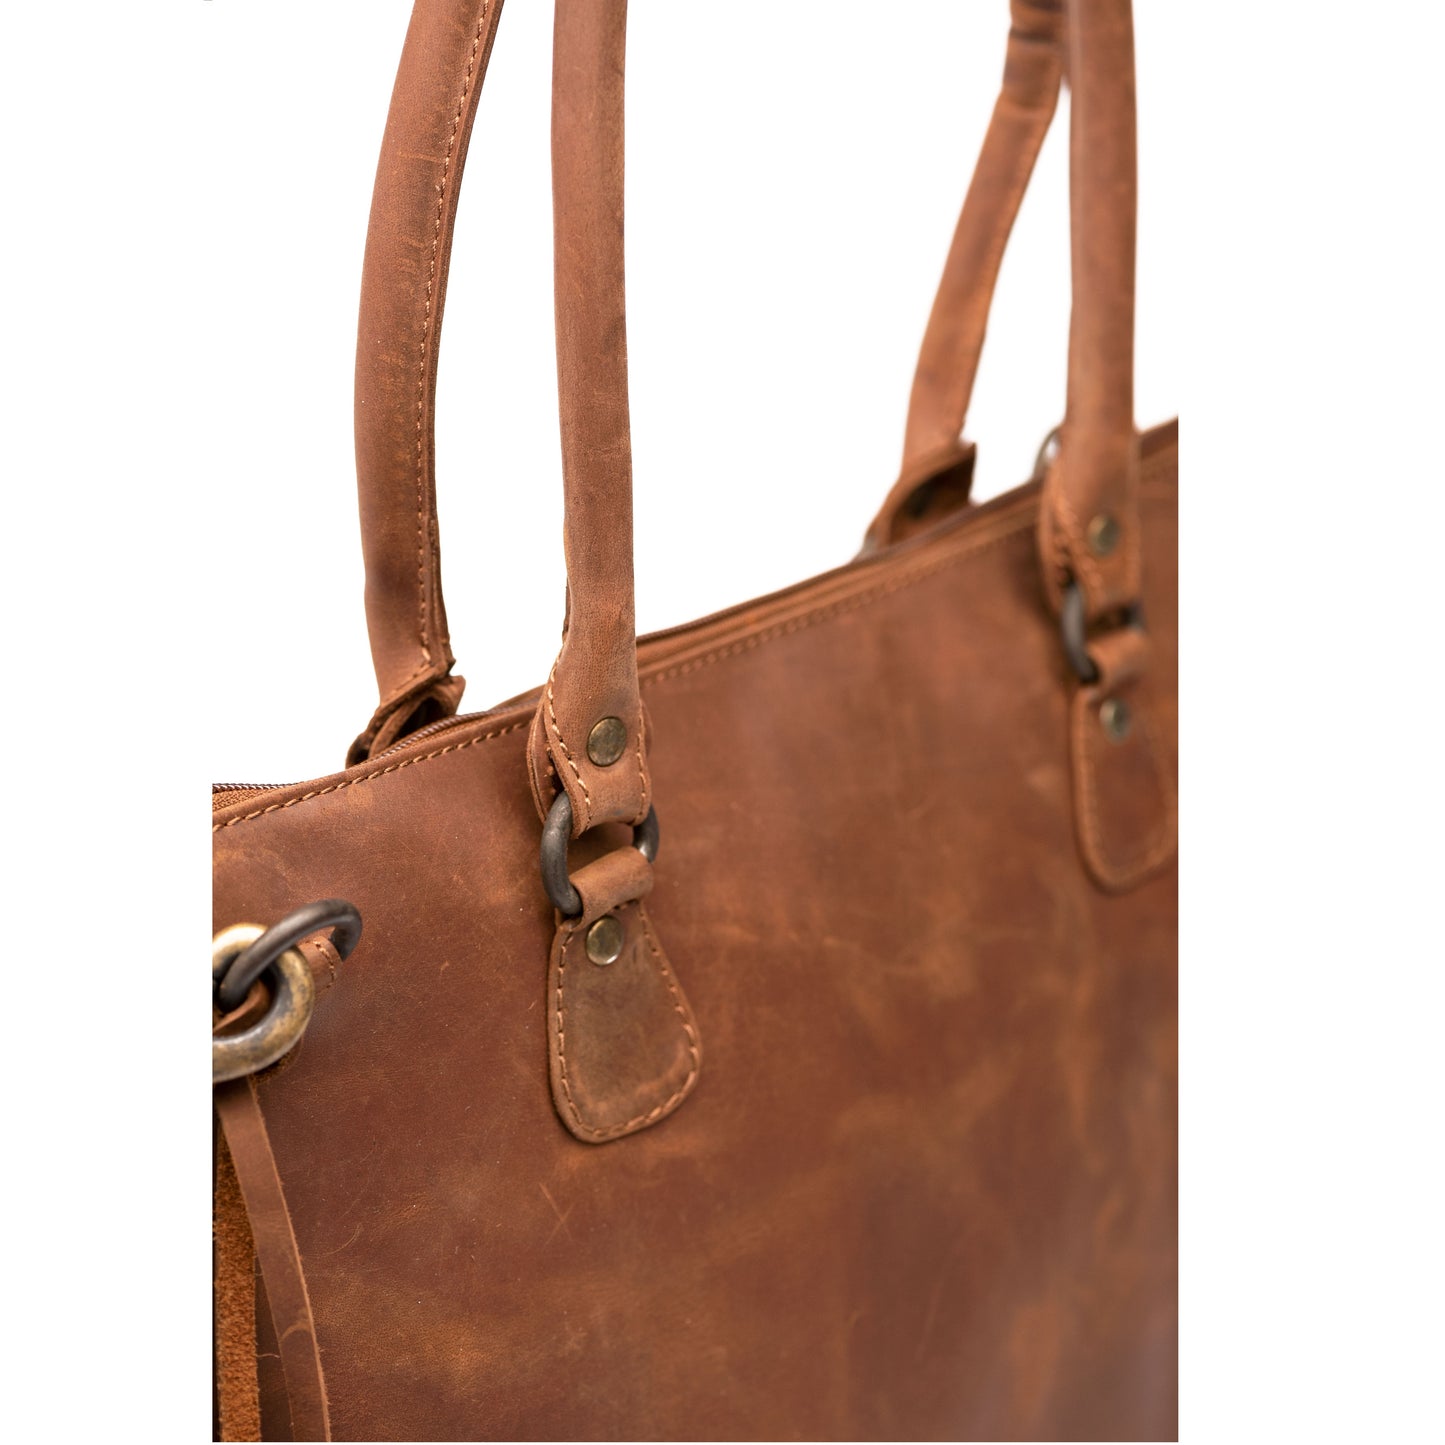 Leather Handbag - Saddle Brown